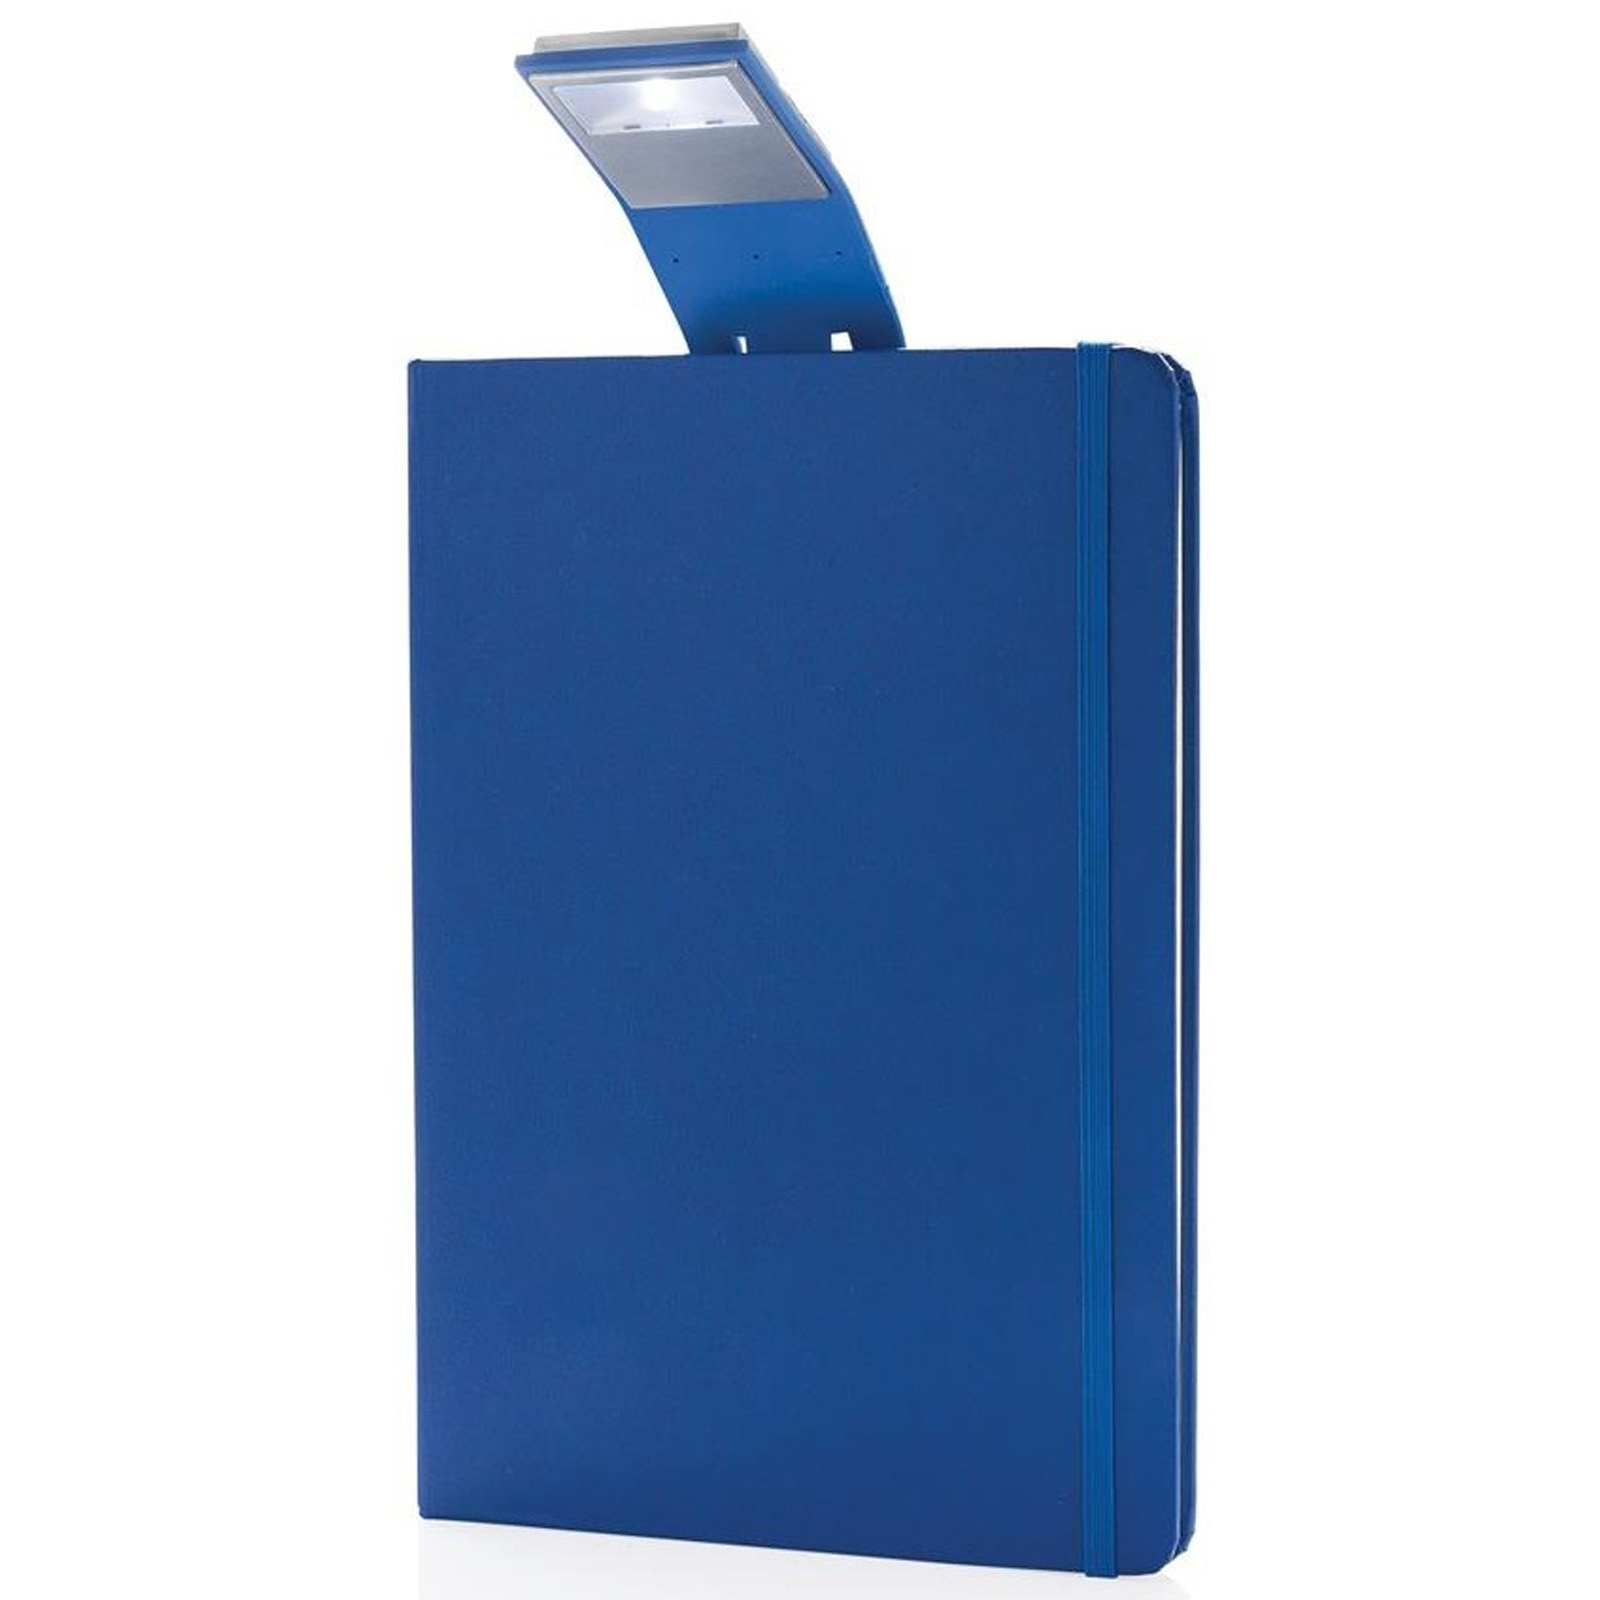 Notizbuch Blau A5 mit LED Lesezeichen 160 cremeweiße Seiten Liniert | Notizblock_blau